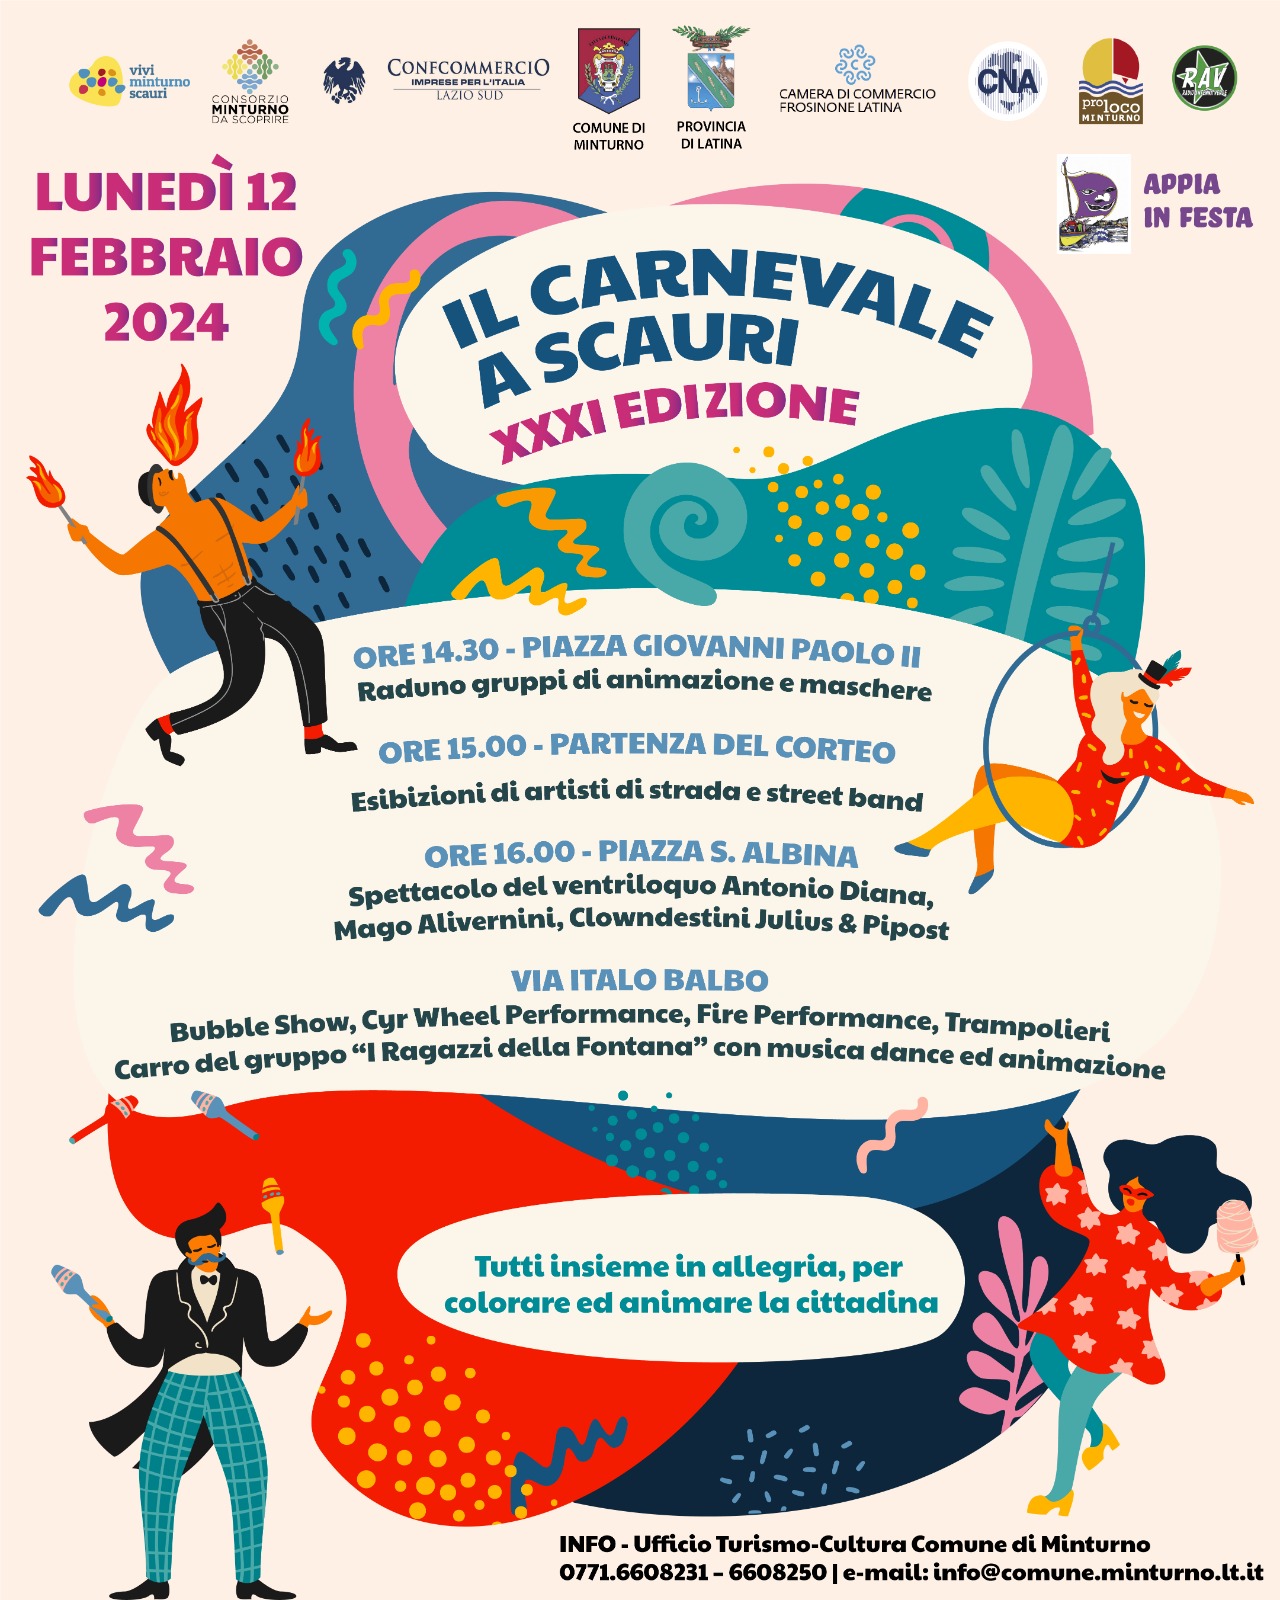 COMUNICATO STAMPA
08.02.2024
	
	
Rinviata a lunedì 12 febbraio 
la sfilata per la XXXI edizione del “Carnevale a Scauri”